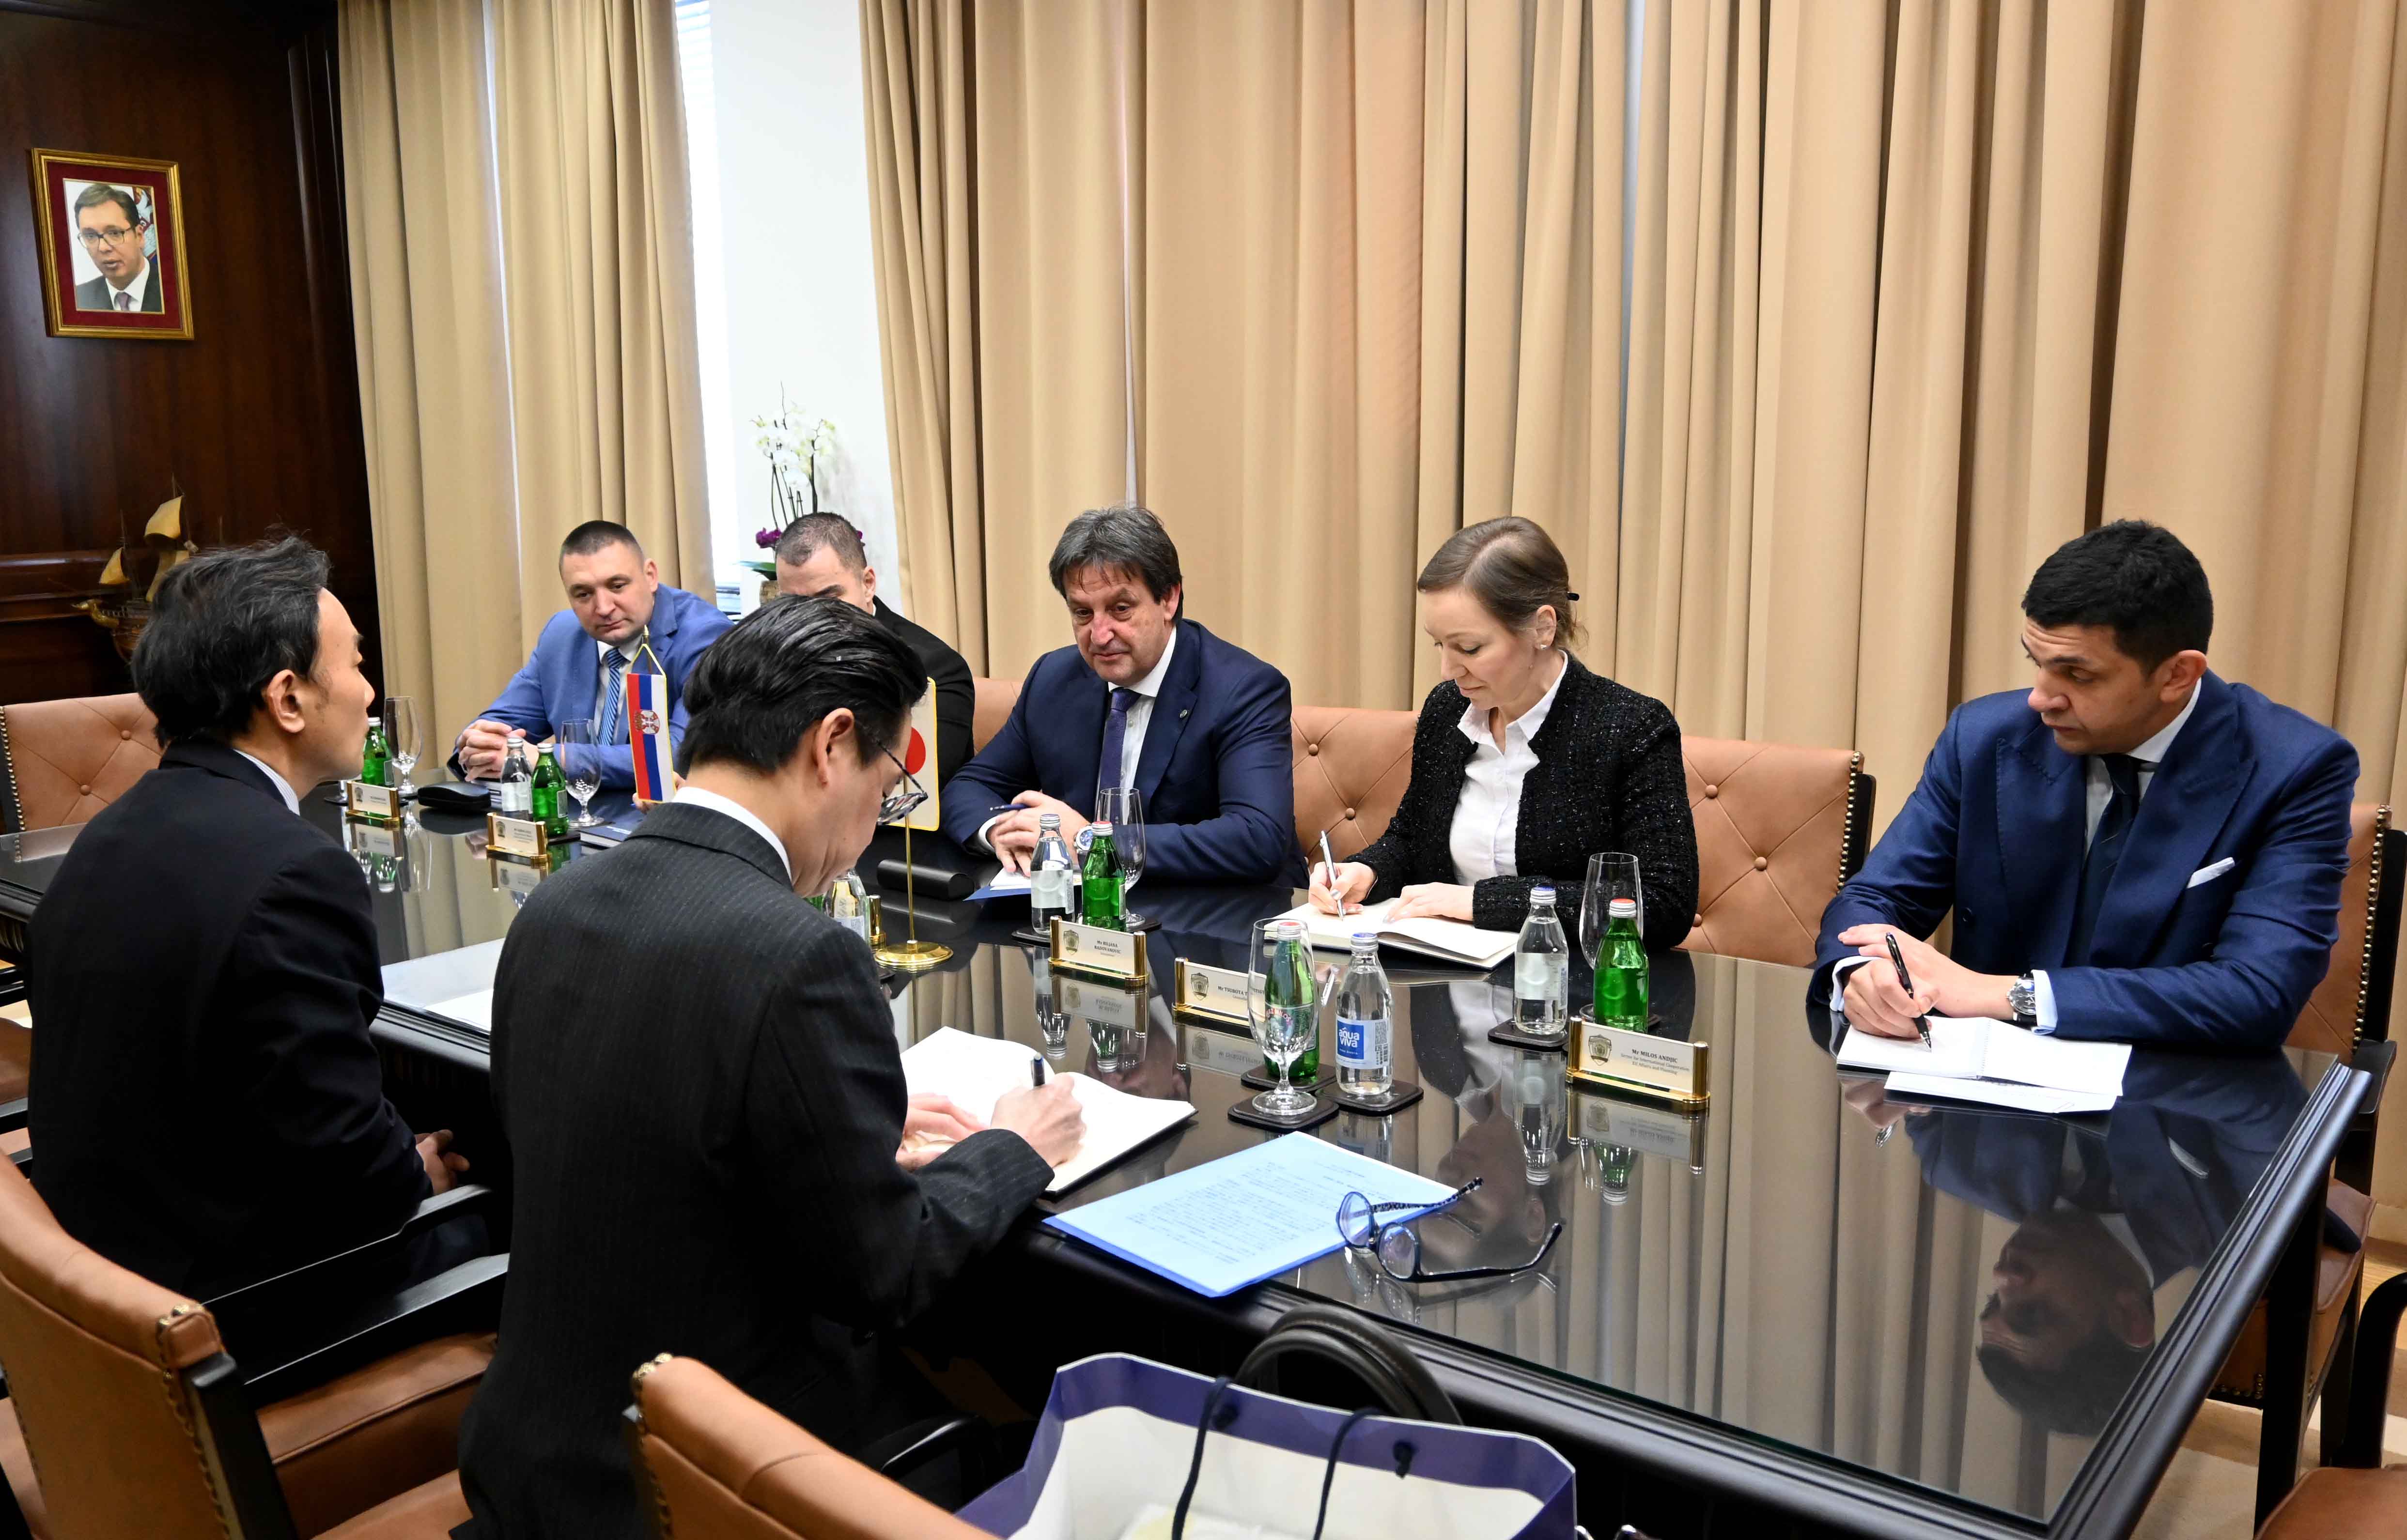 Ministar unutrašnjih poslova Bratislav Gašić sastao se sa ambasadorom Japana u Srbiji Takahikom Kacumatom